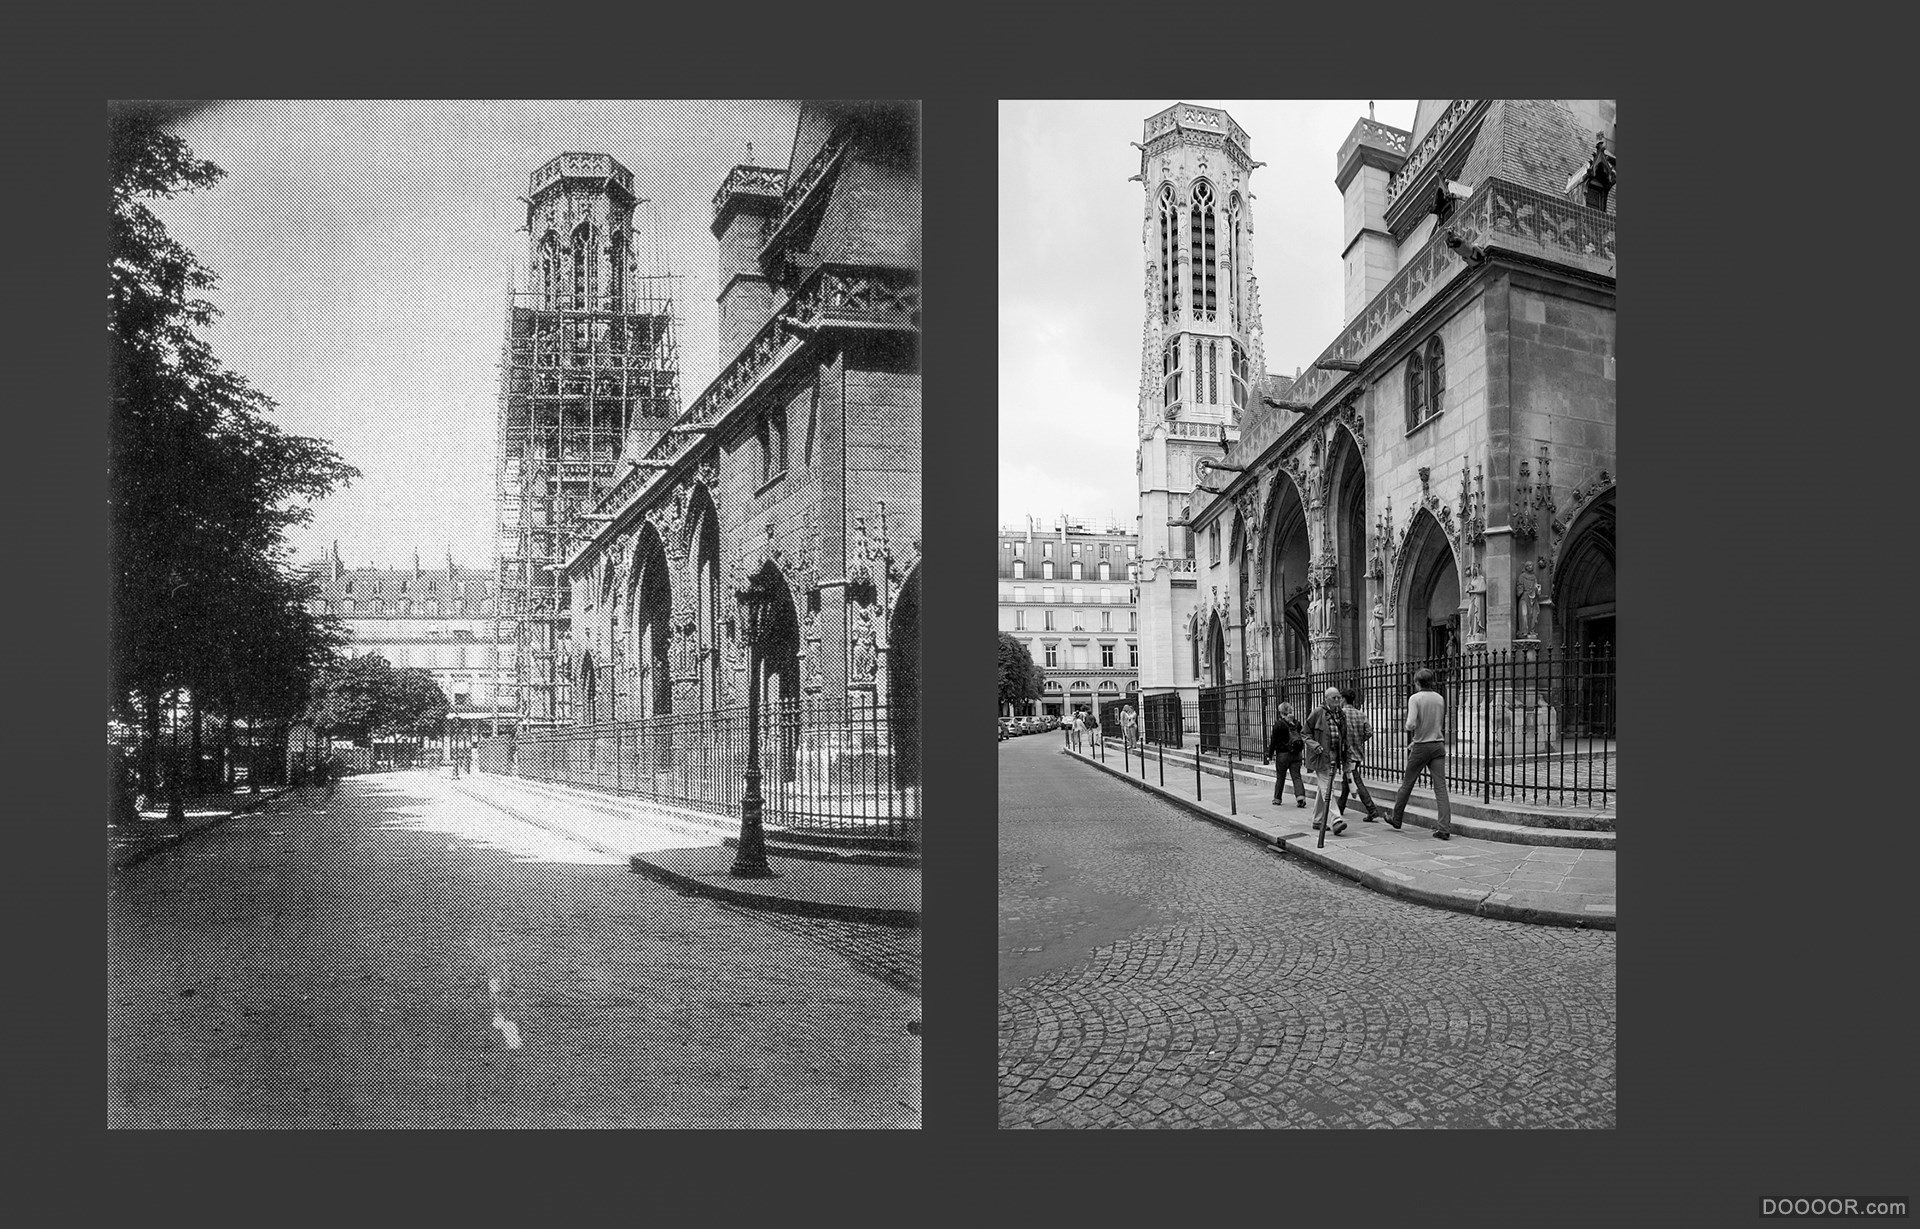 过去与现在-巴黎街头照片对比 [50P] (42).jpg